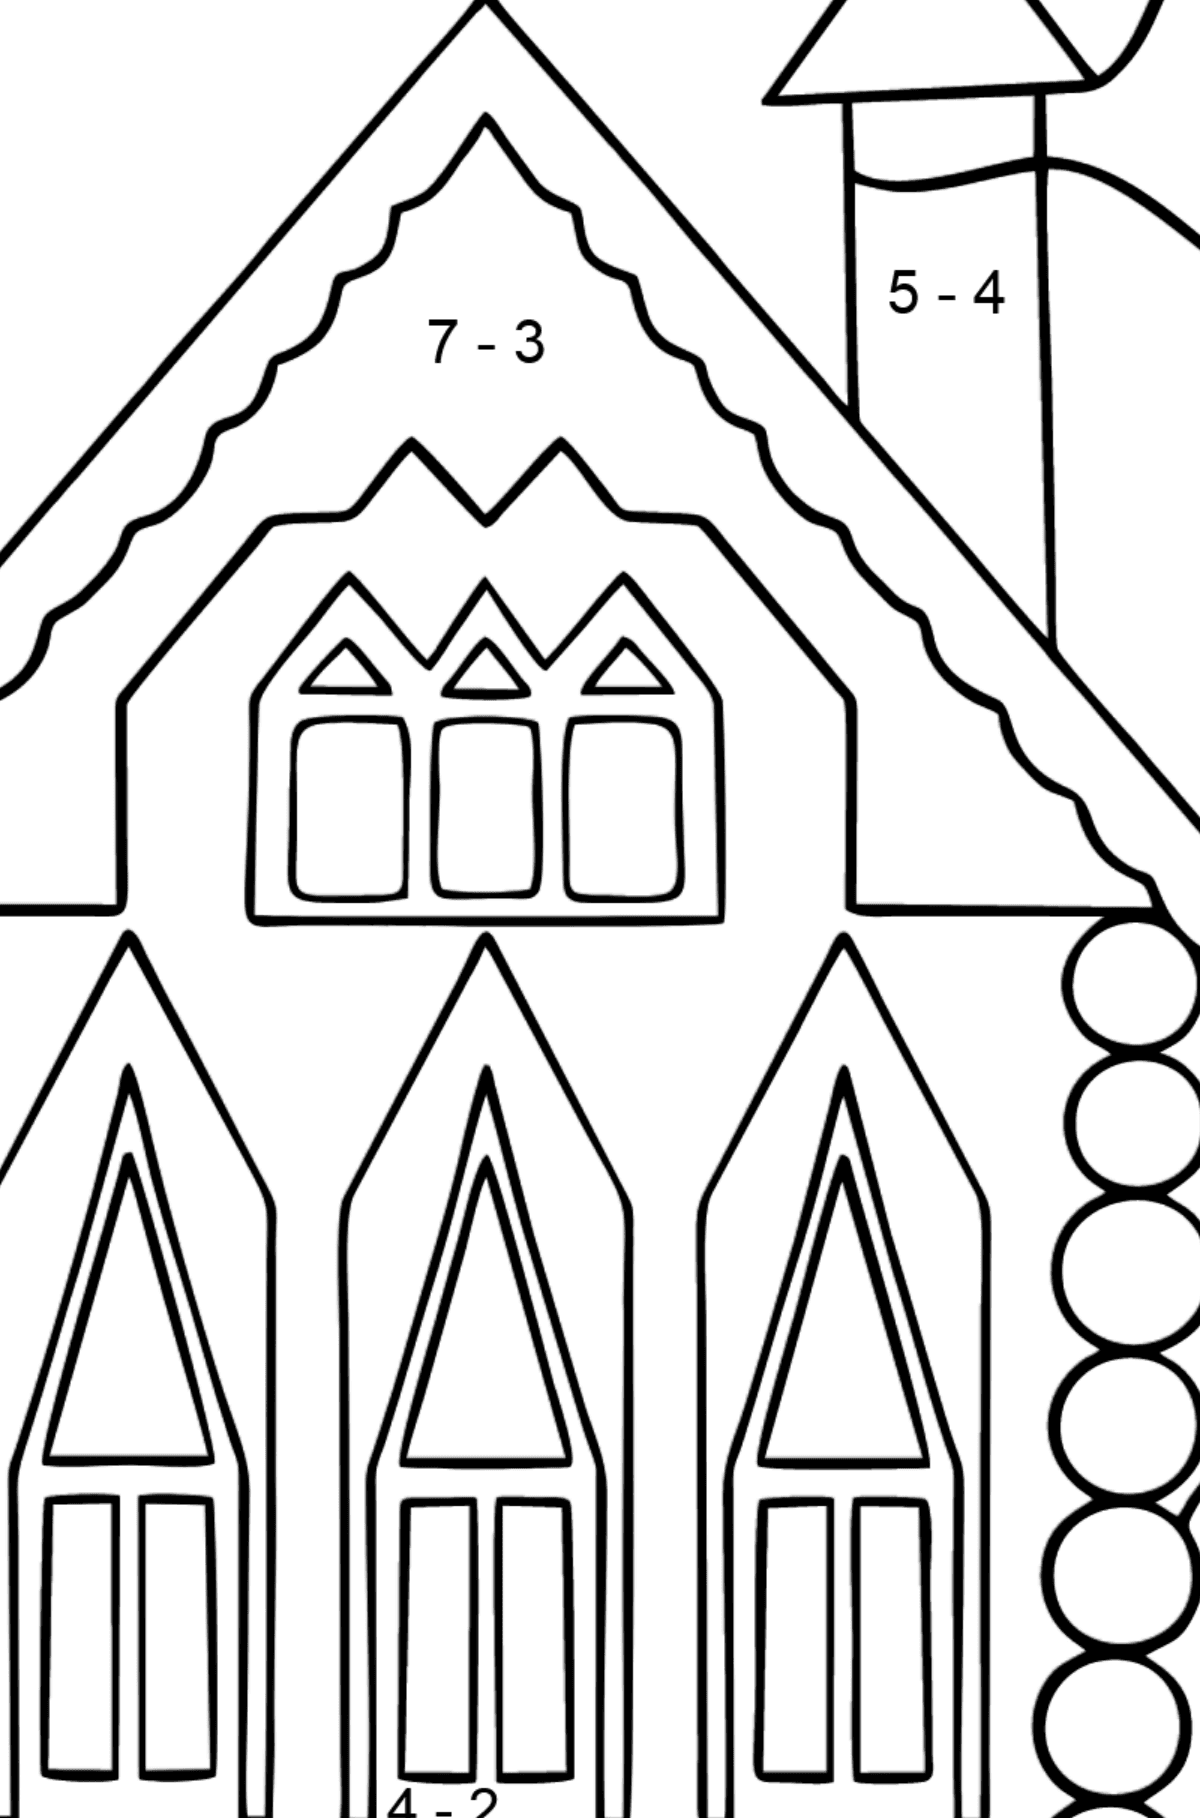 Einfache Ausmalbild - Ein Regenbogenhaus - Mathe Ausmalbilder - Subtraktion für Kinder